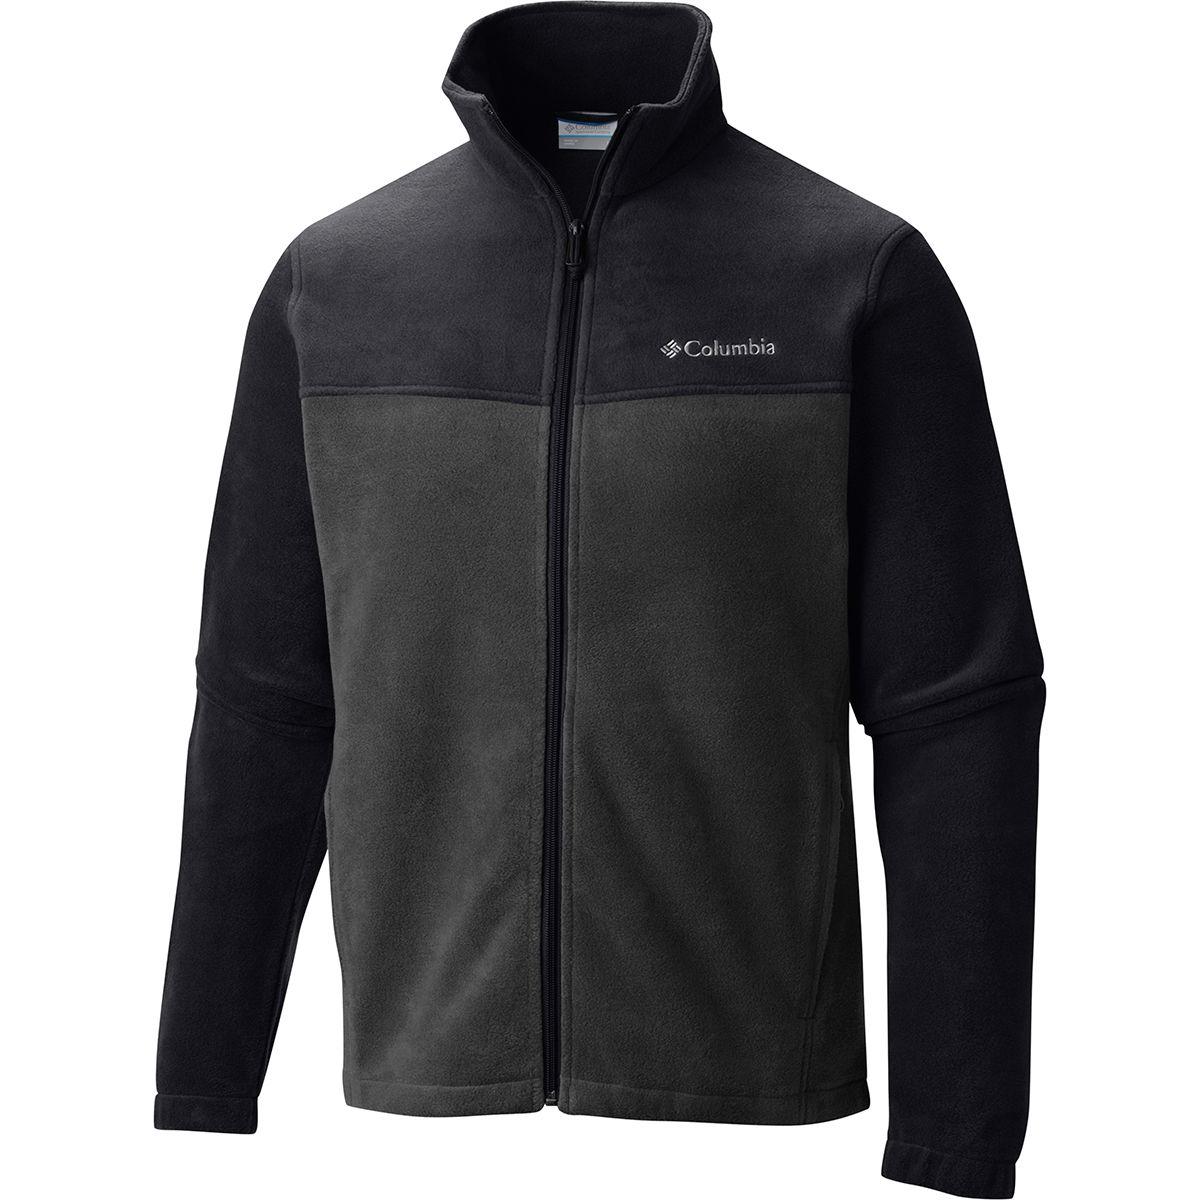 Columbia Steens Mountain Full-zip 2.0 Fleece Jacket in Black for Men - Lyst